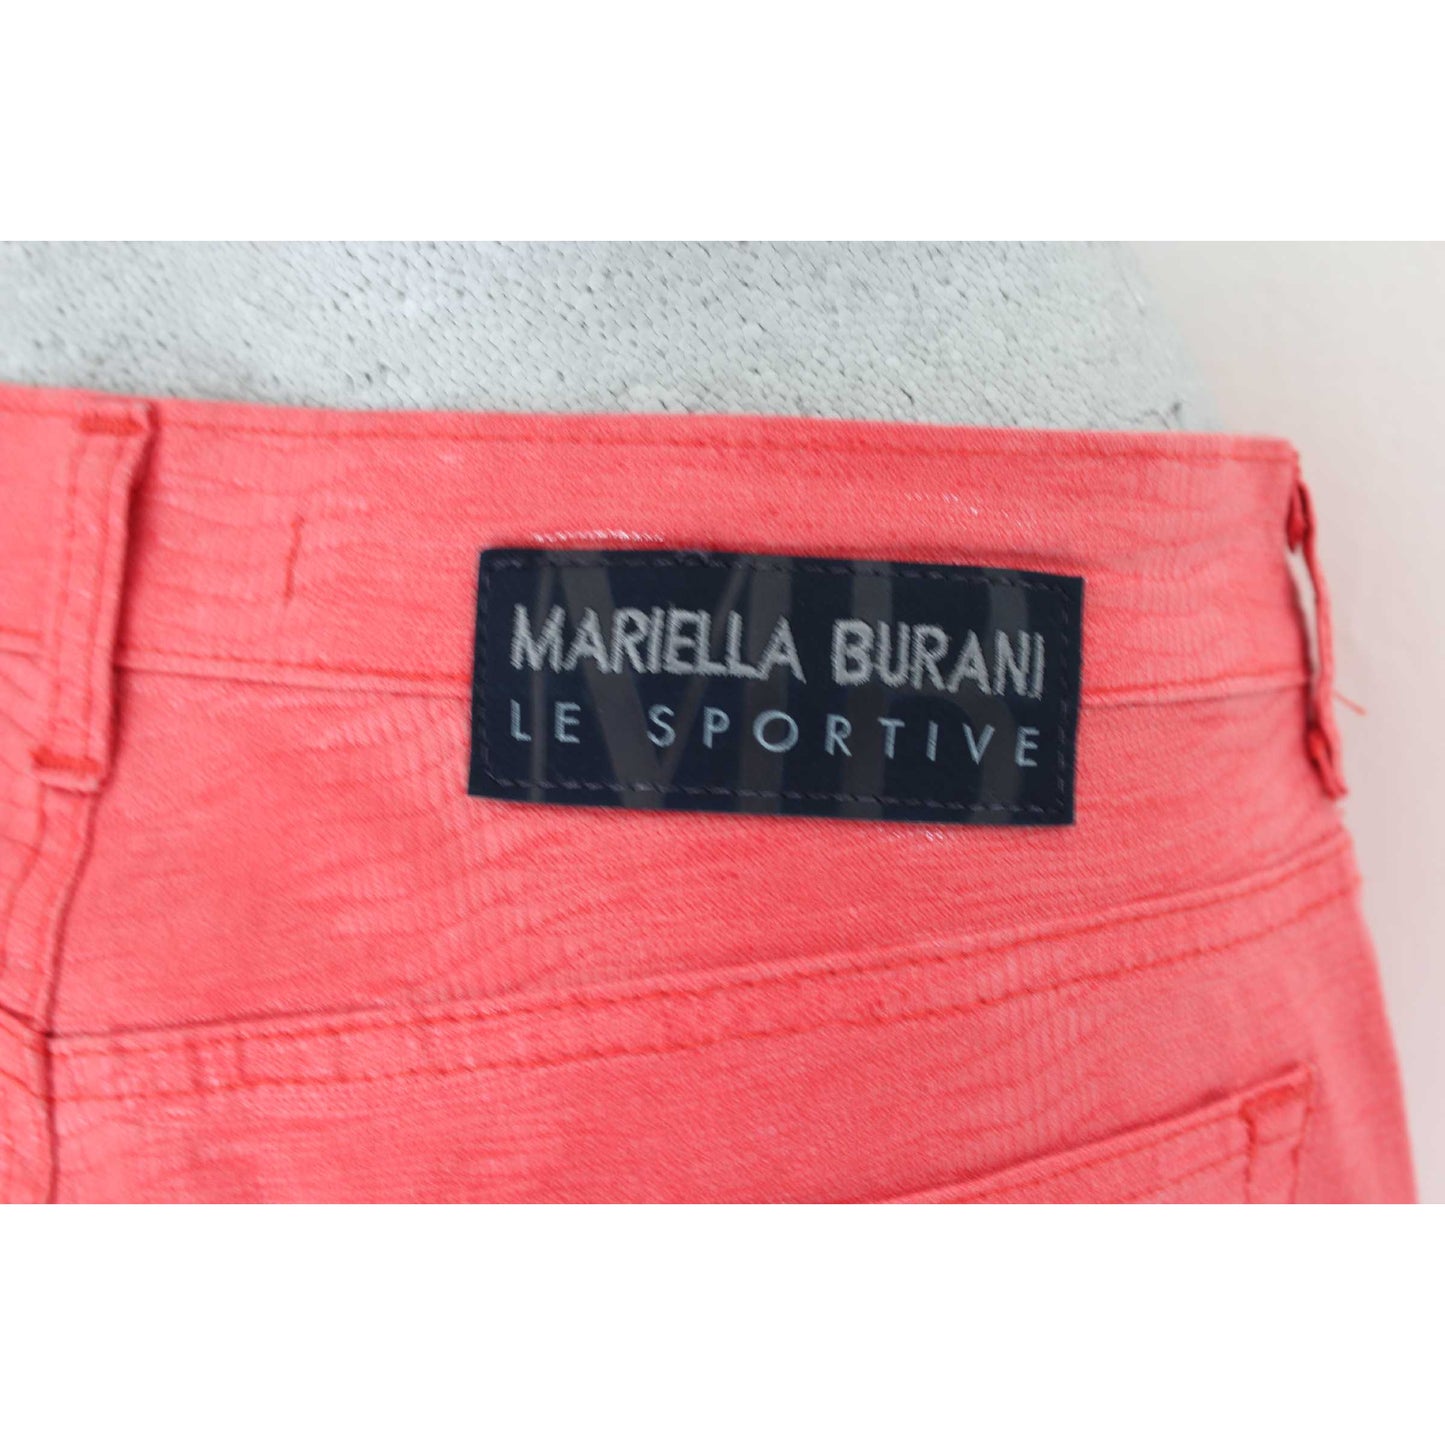 Mariella Burani Pantalone Cotone Cerato Svasato Vintage Rosa